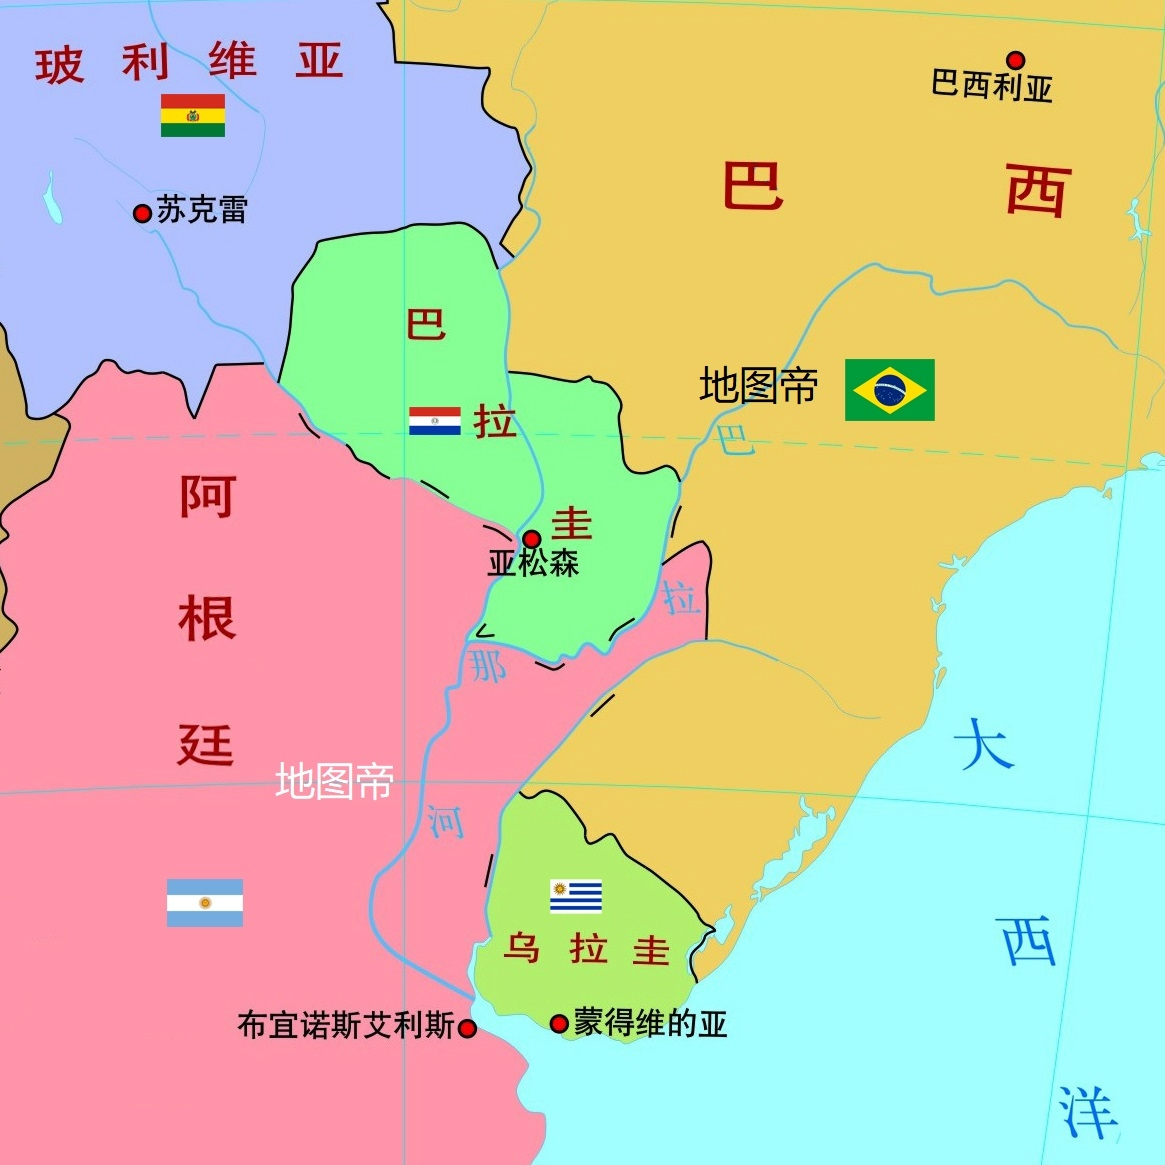 乌拉圭地图中文版 - 乌拉圭地图 - 地理教师网